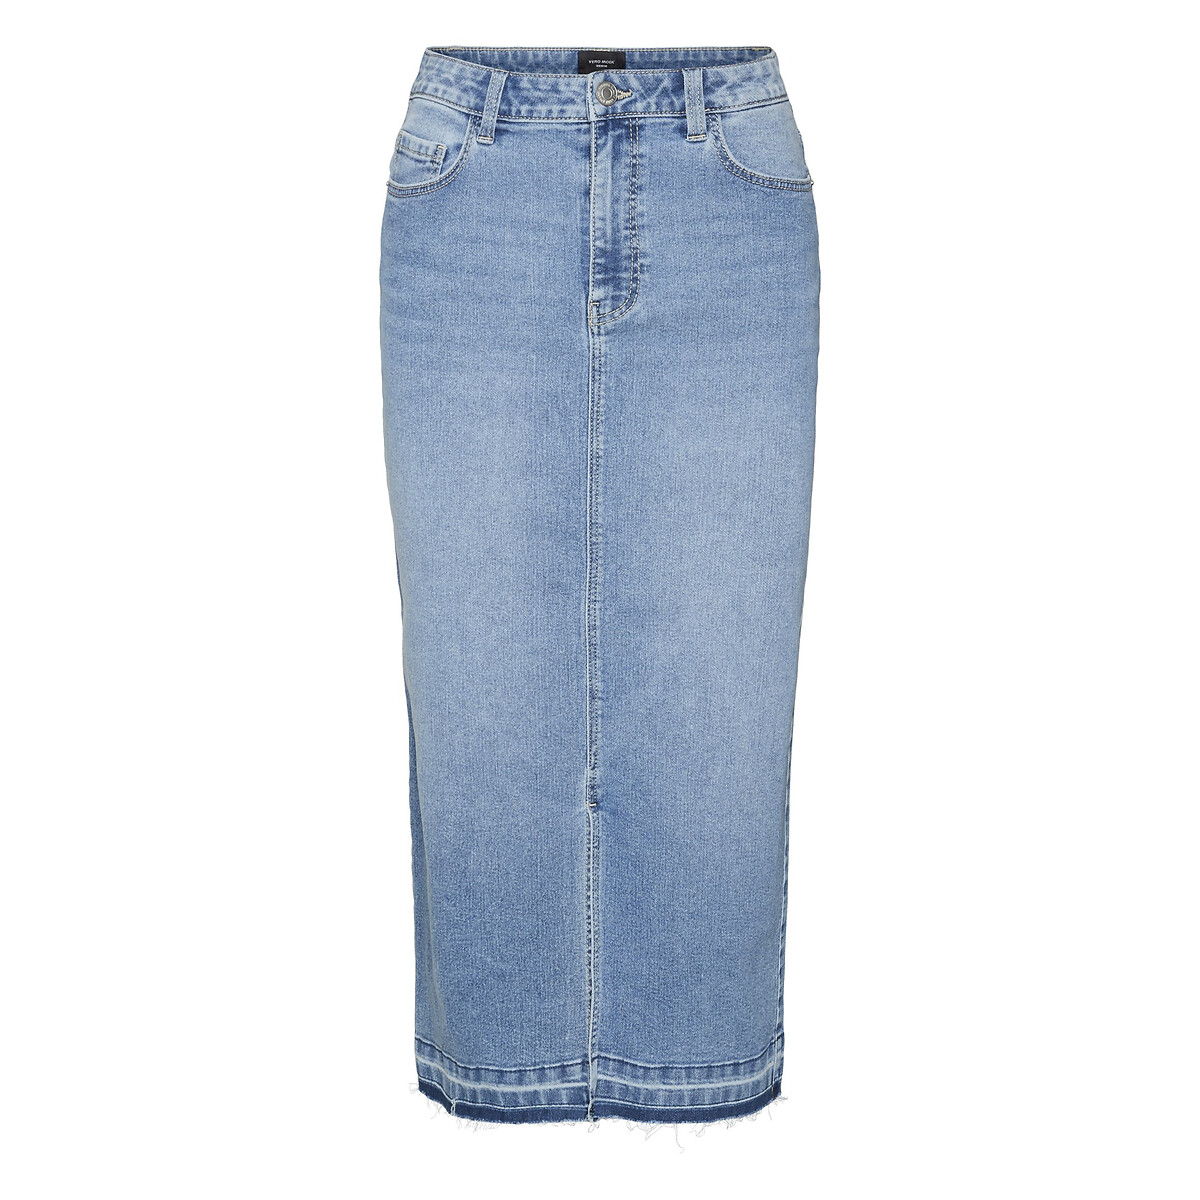 Юбка из джинсовой ткани с высокой посадкой S синий юбка из джинсовой ткани l синий